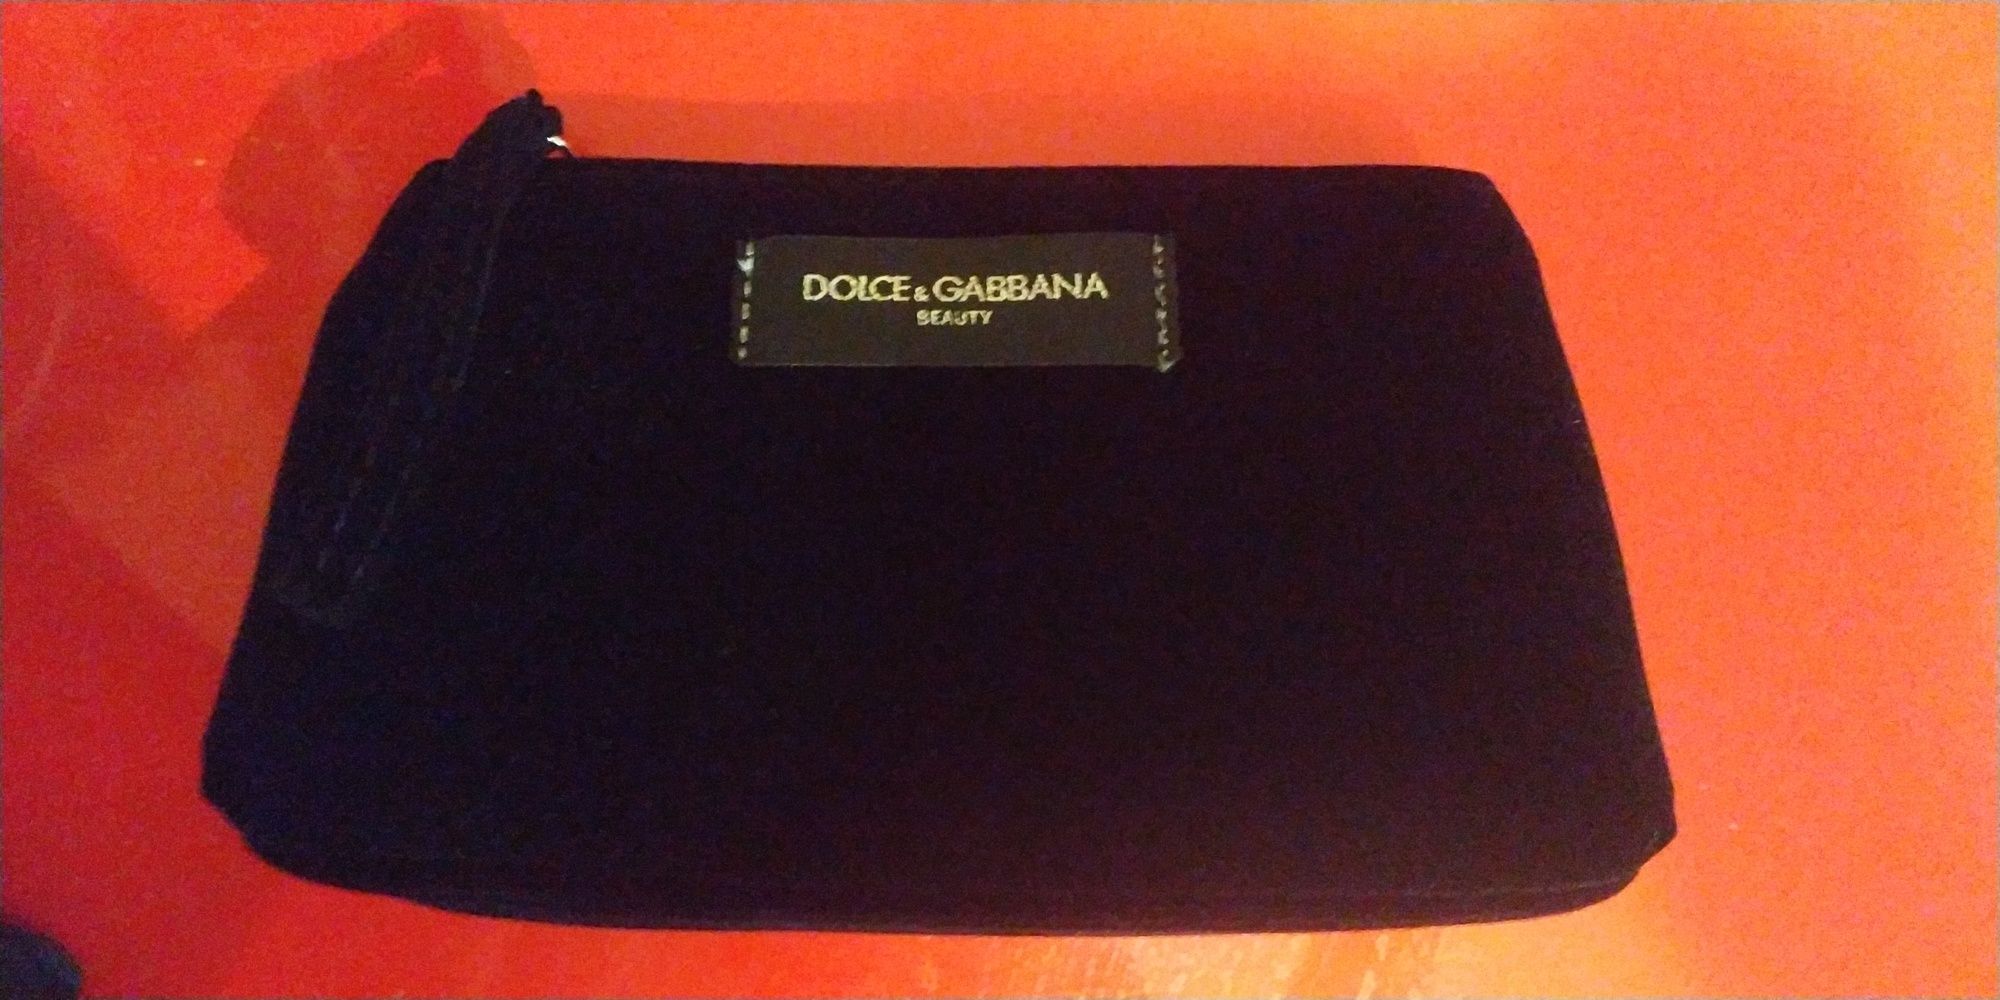 Dolce &Gabbana BEAUTY kosmetyczka makeup czarna kosmetyki